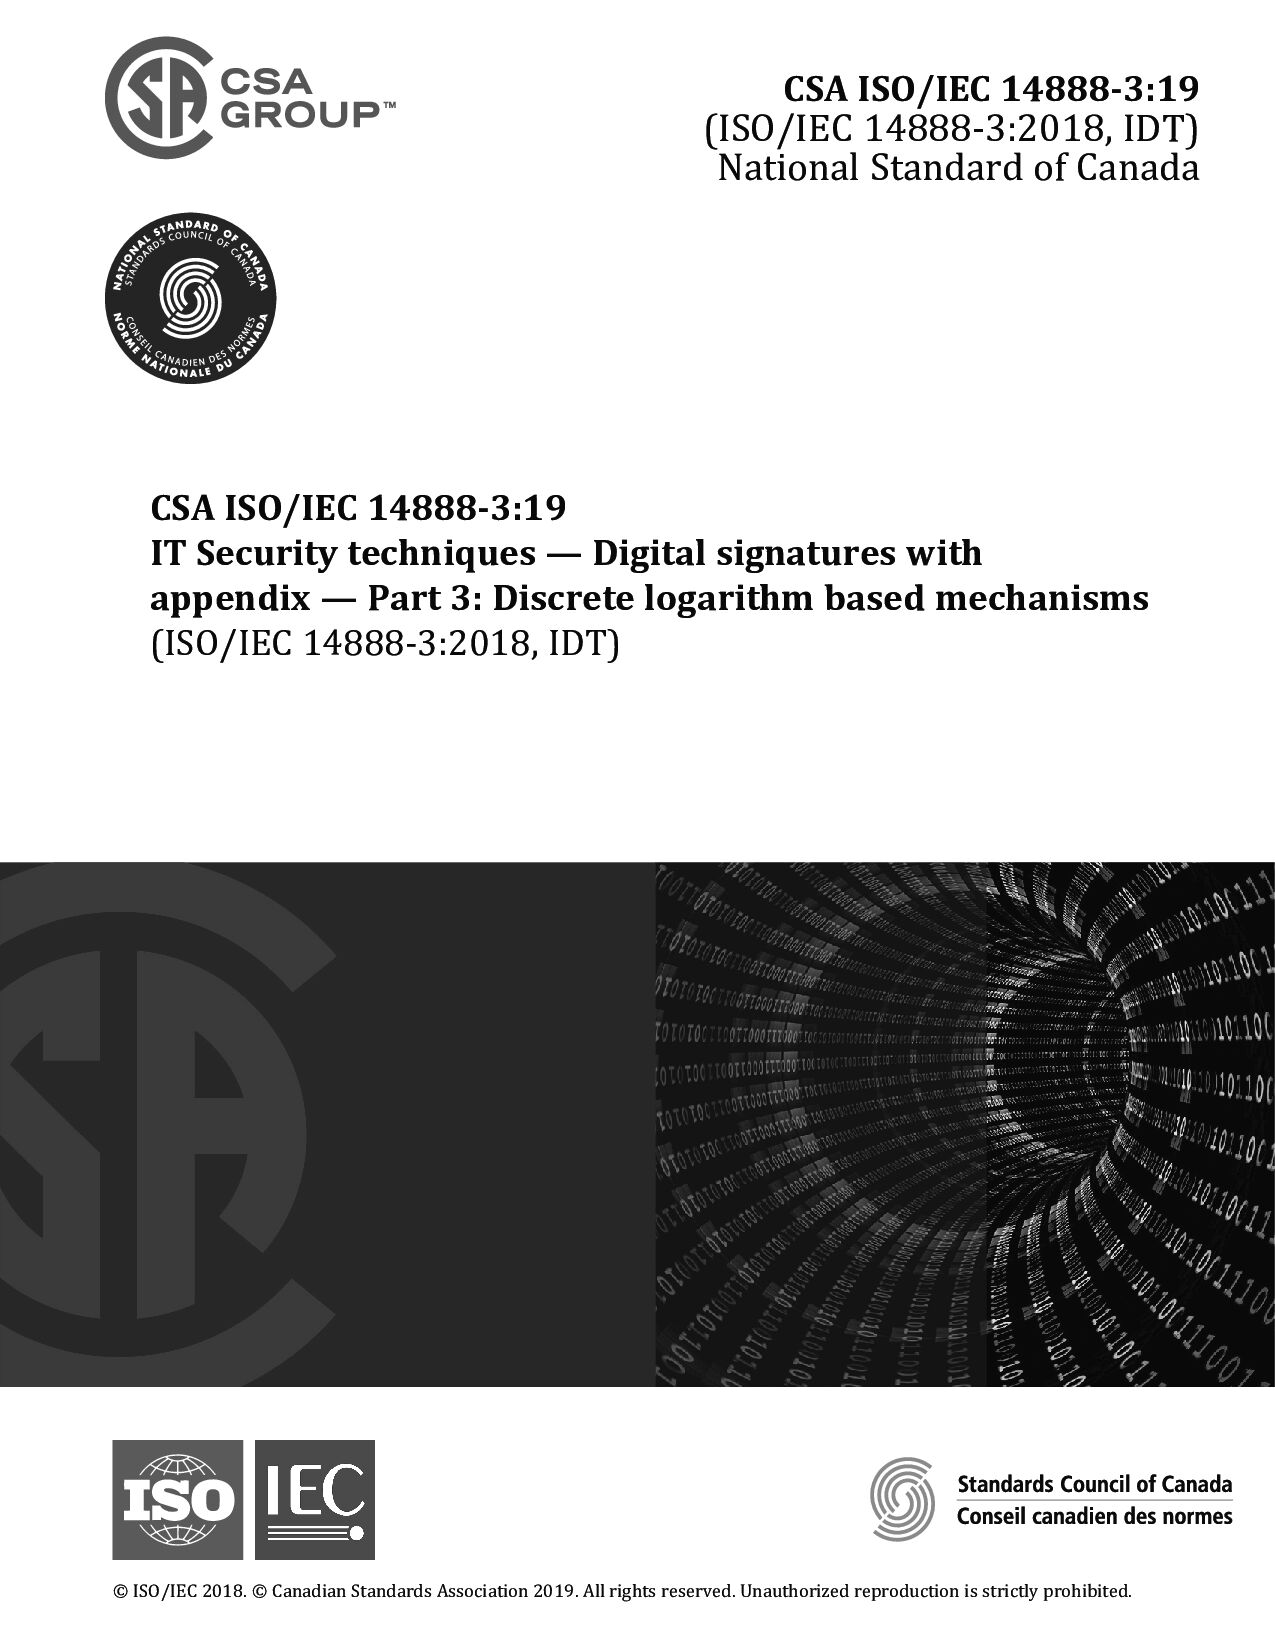 CSA ISO/IEC 14888-3:2019封面图